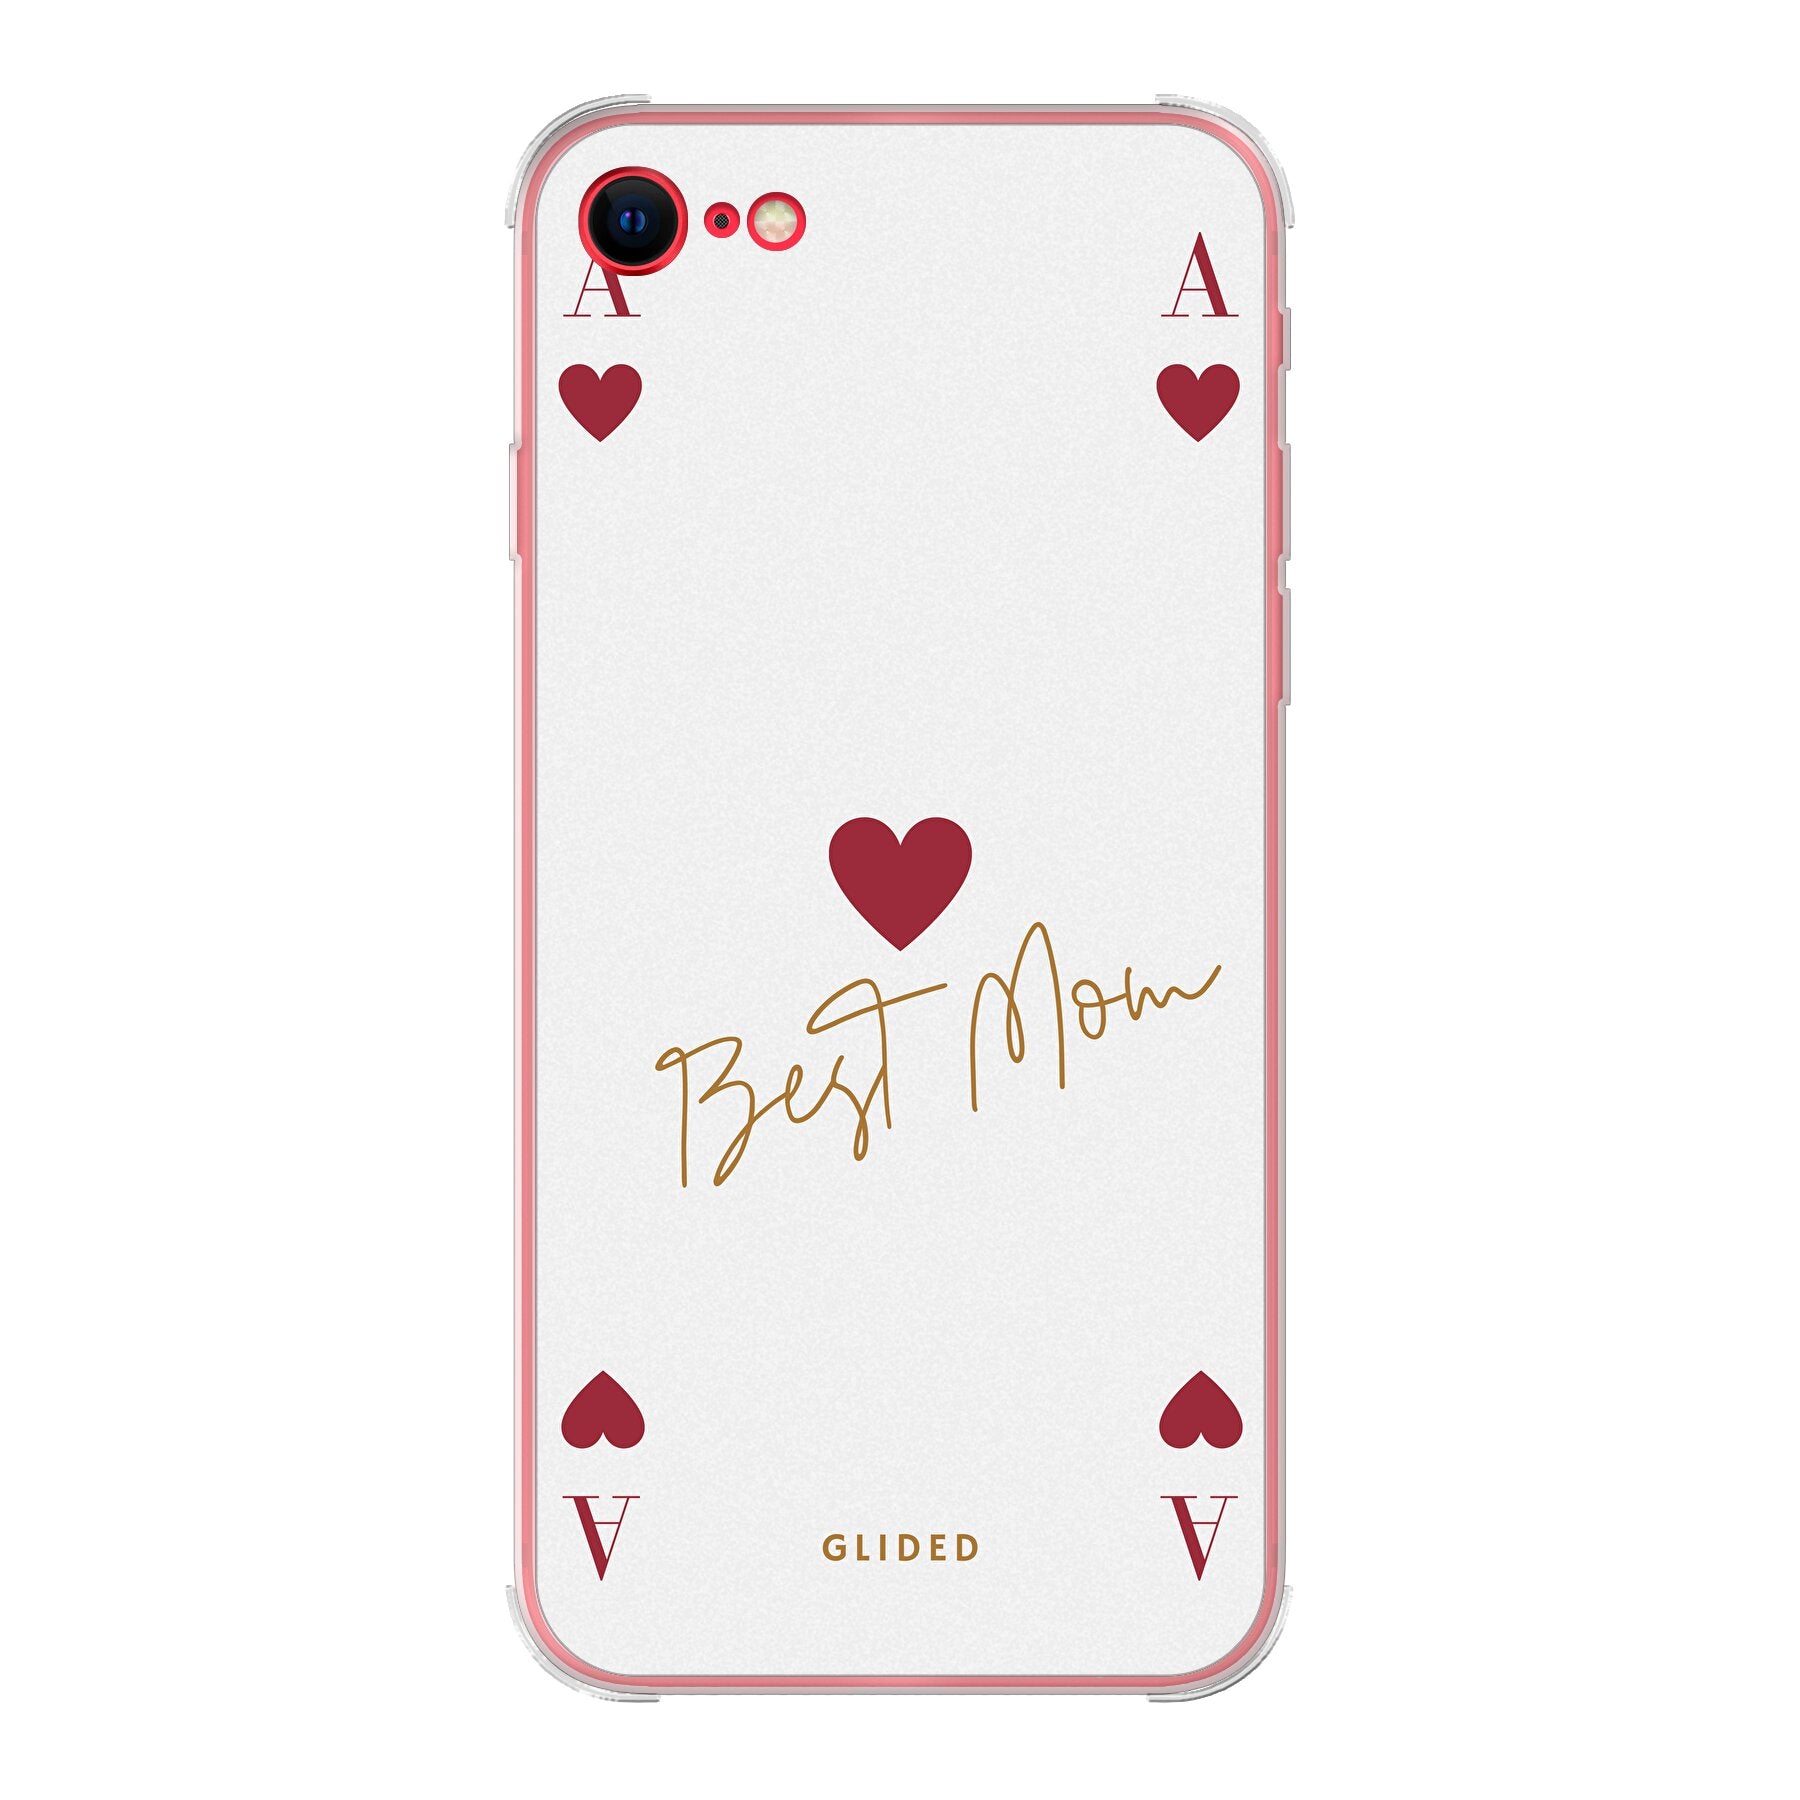 Mom's Game - iPhone SE 2020 - Bumper case